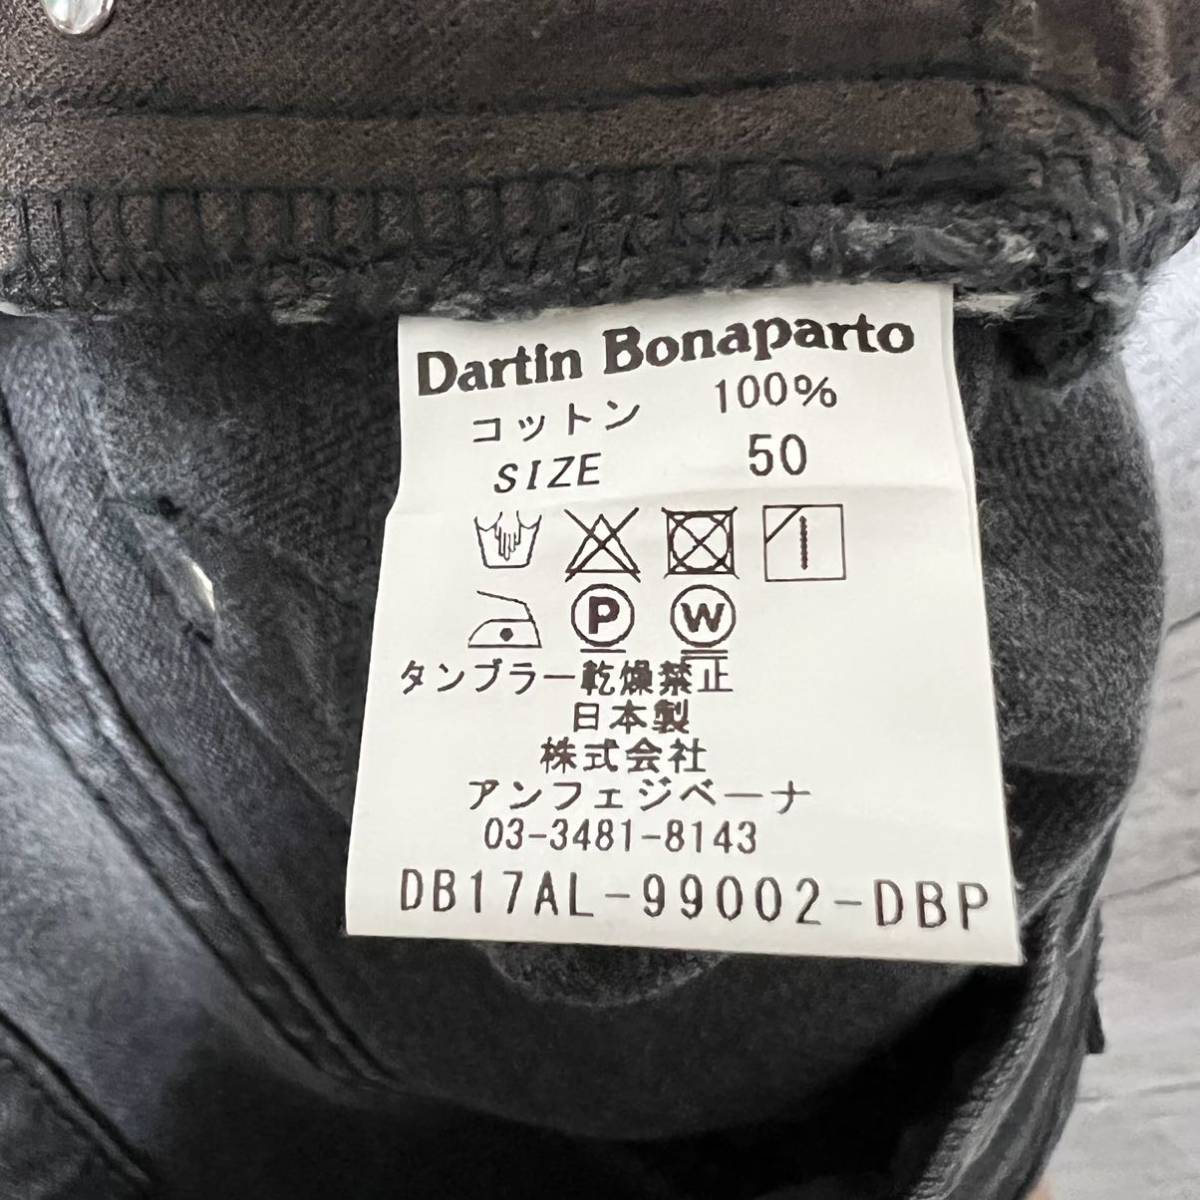  красивая вещь ！Dartin Bonaparto ... обработка  Denim   брюки  ！